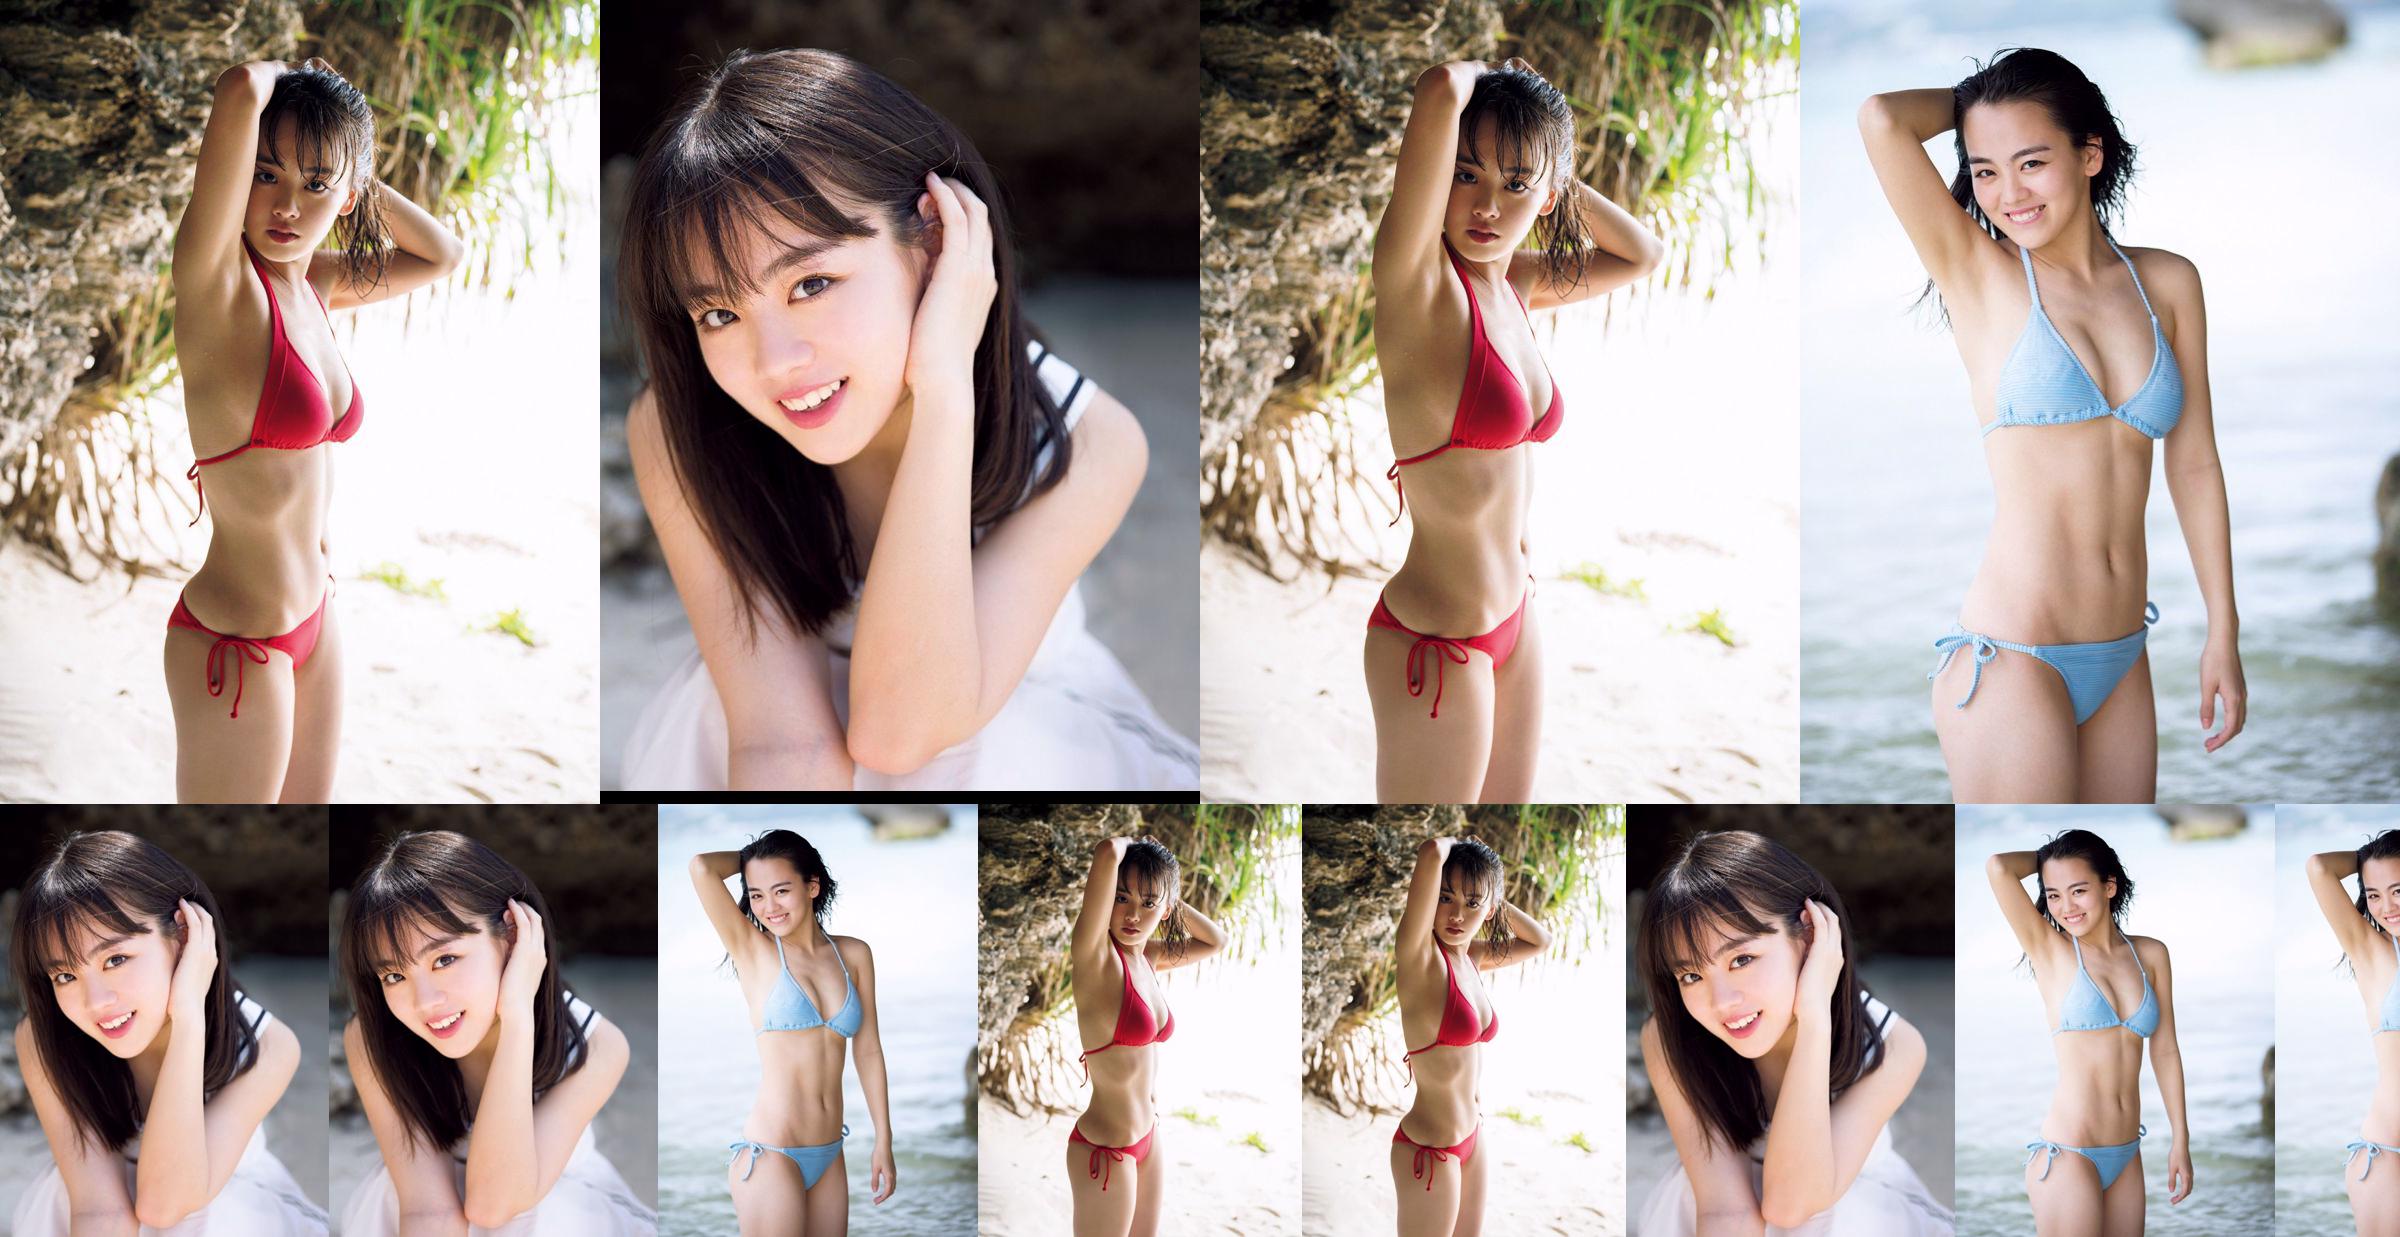 [THỨ SÁU] Rikka Ihara << Cựu đội trưởng câu lạc bộ khiêu vũ trường trung học Tomioka ra mắt trong bộ bikini >> Ảnh No.06d37b Trang 1